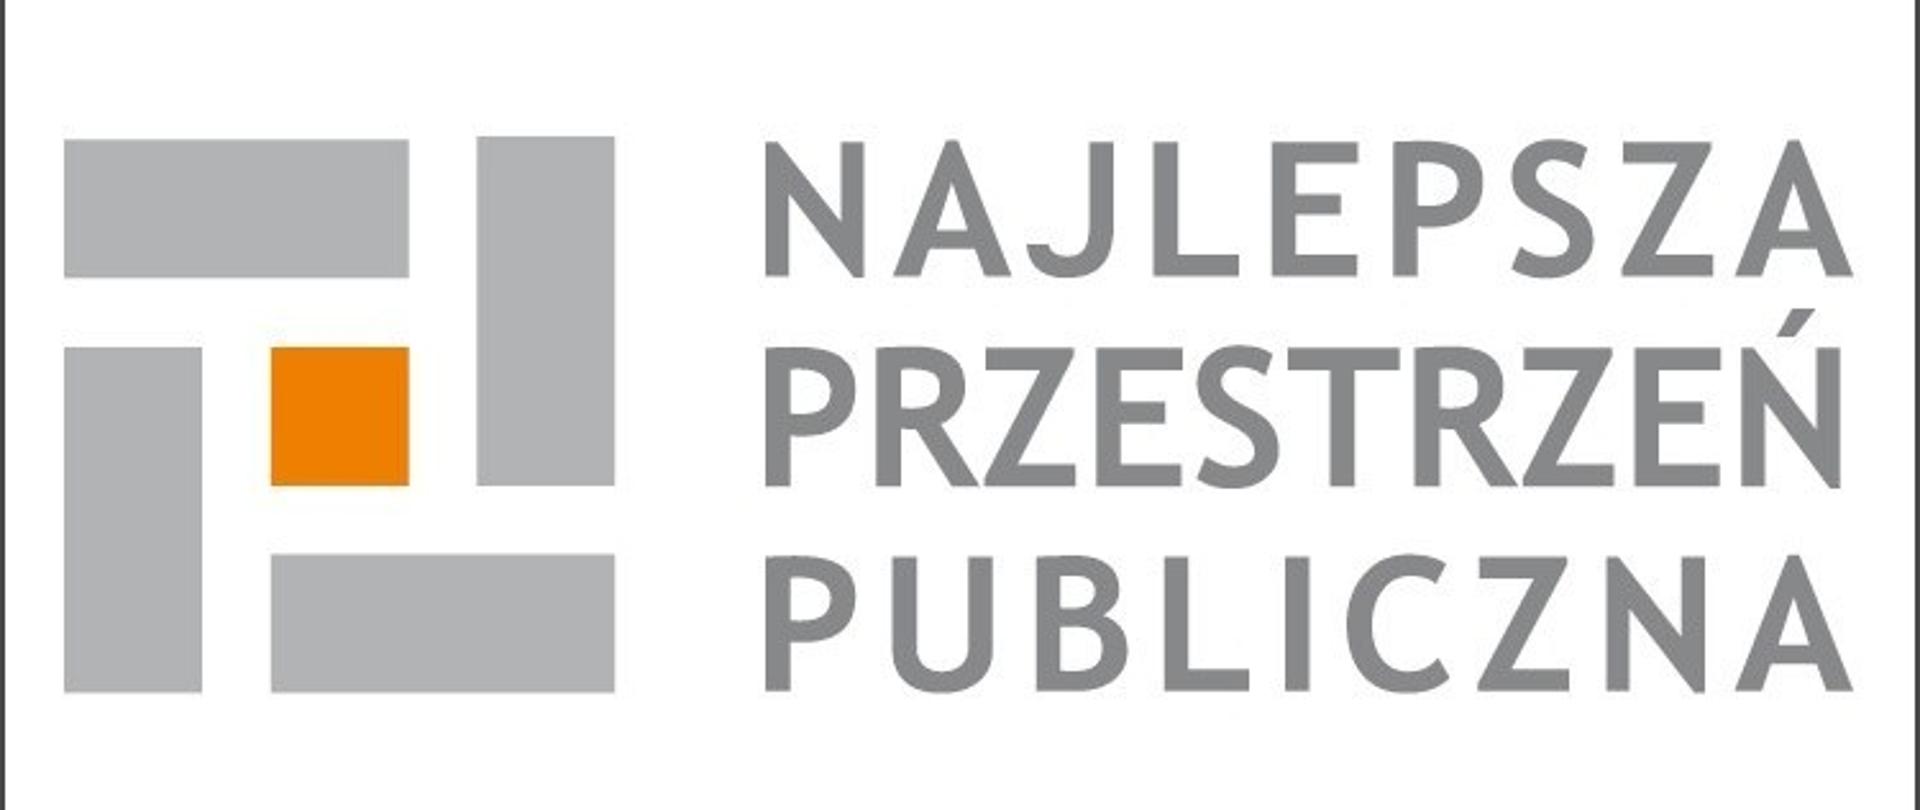 Najlepsza Przestrzeń Publiczna - logo